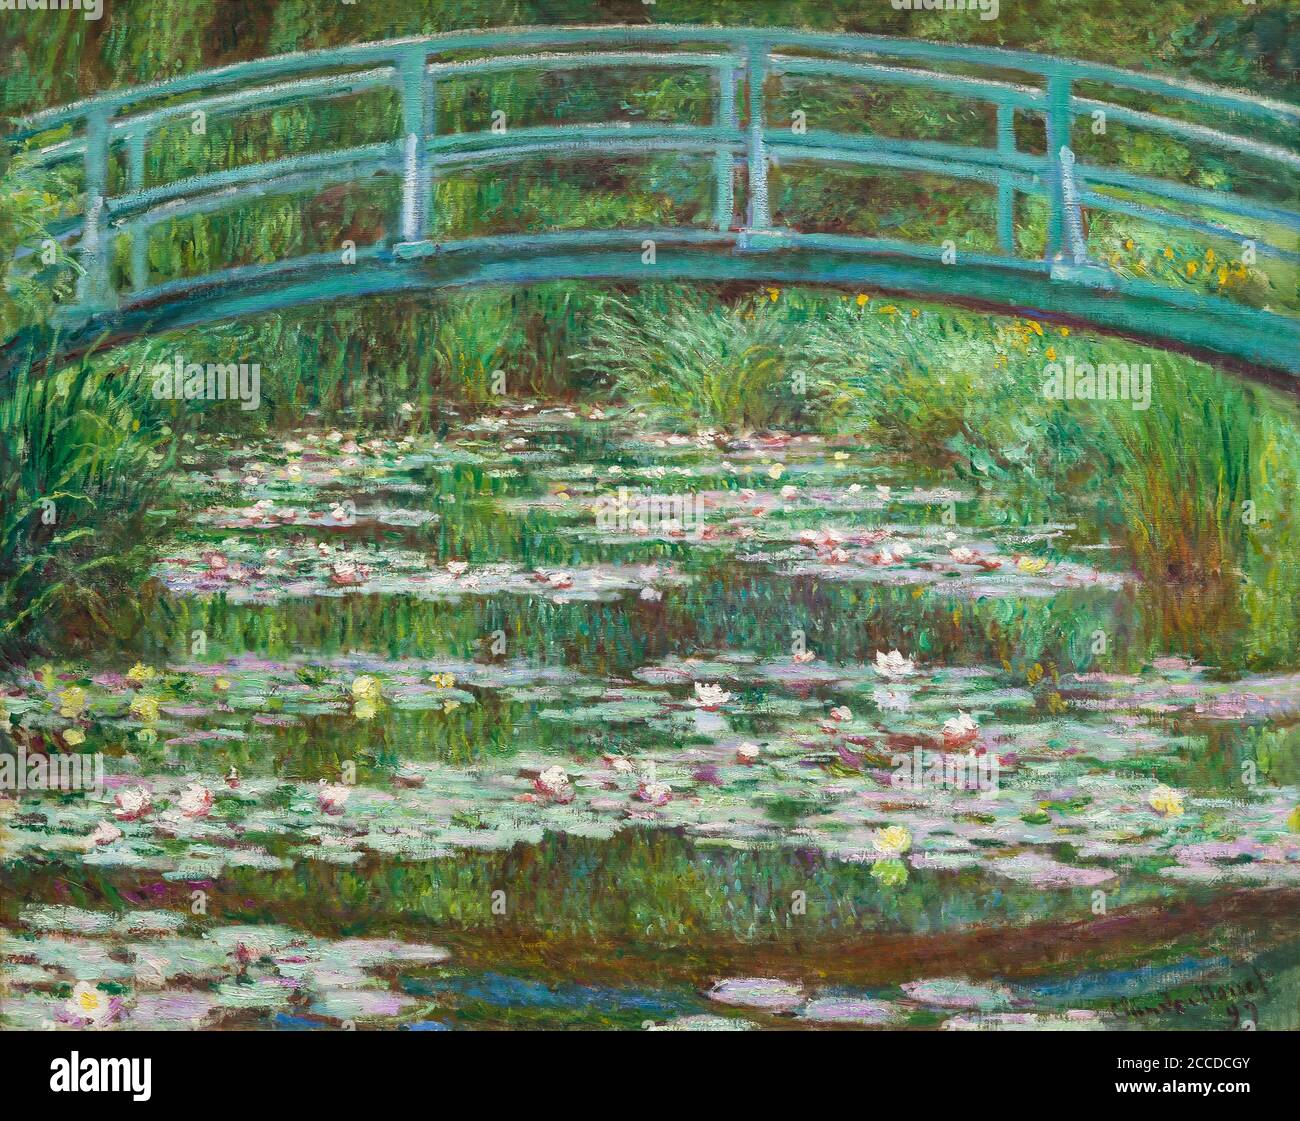 Le pont japonais, Claude Monet, 1899, National Gallery of Art, Washington DC, USA, Amérique du Nord Banque D'Images